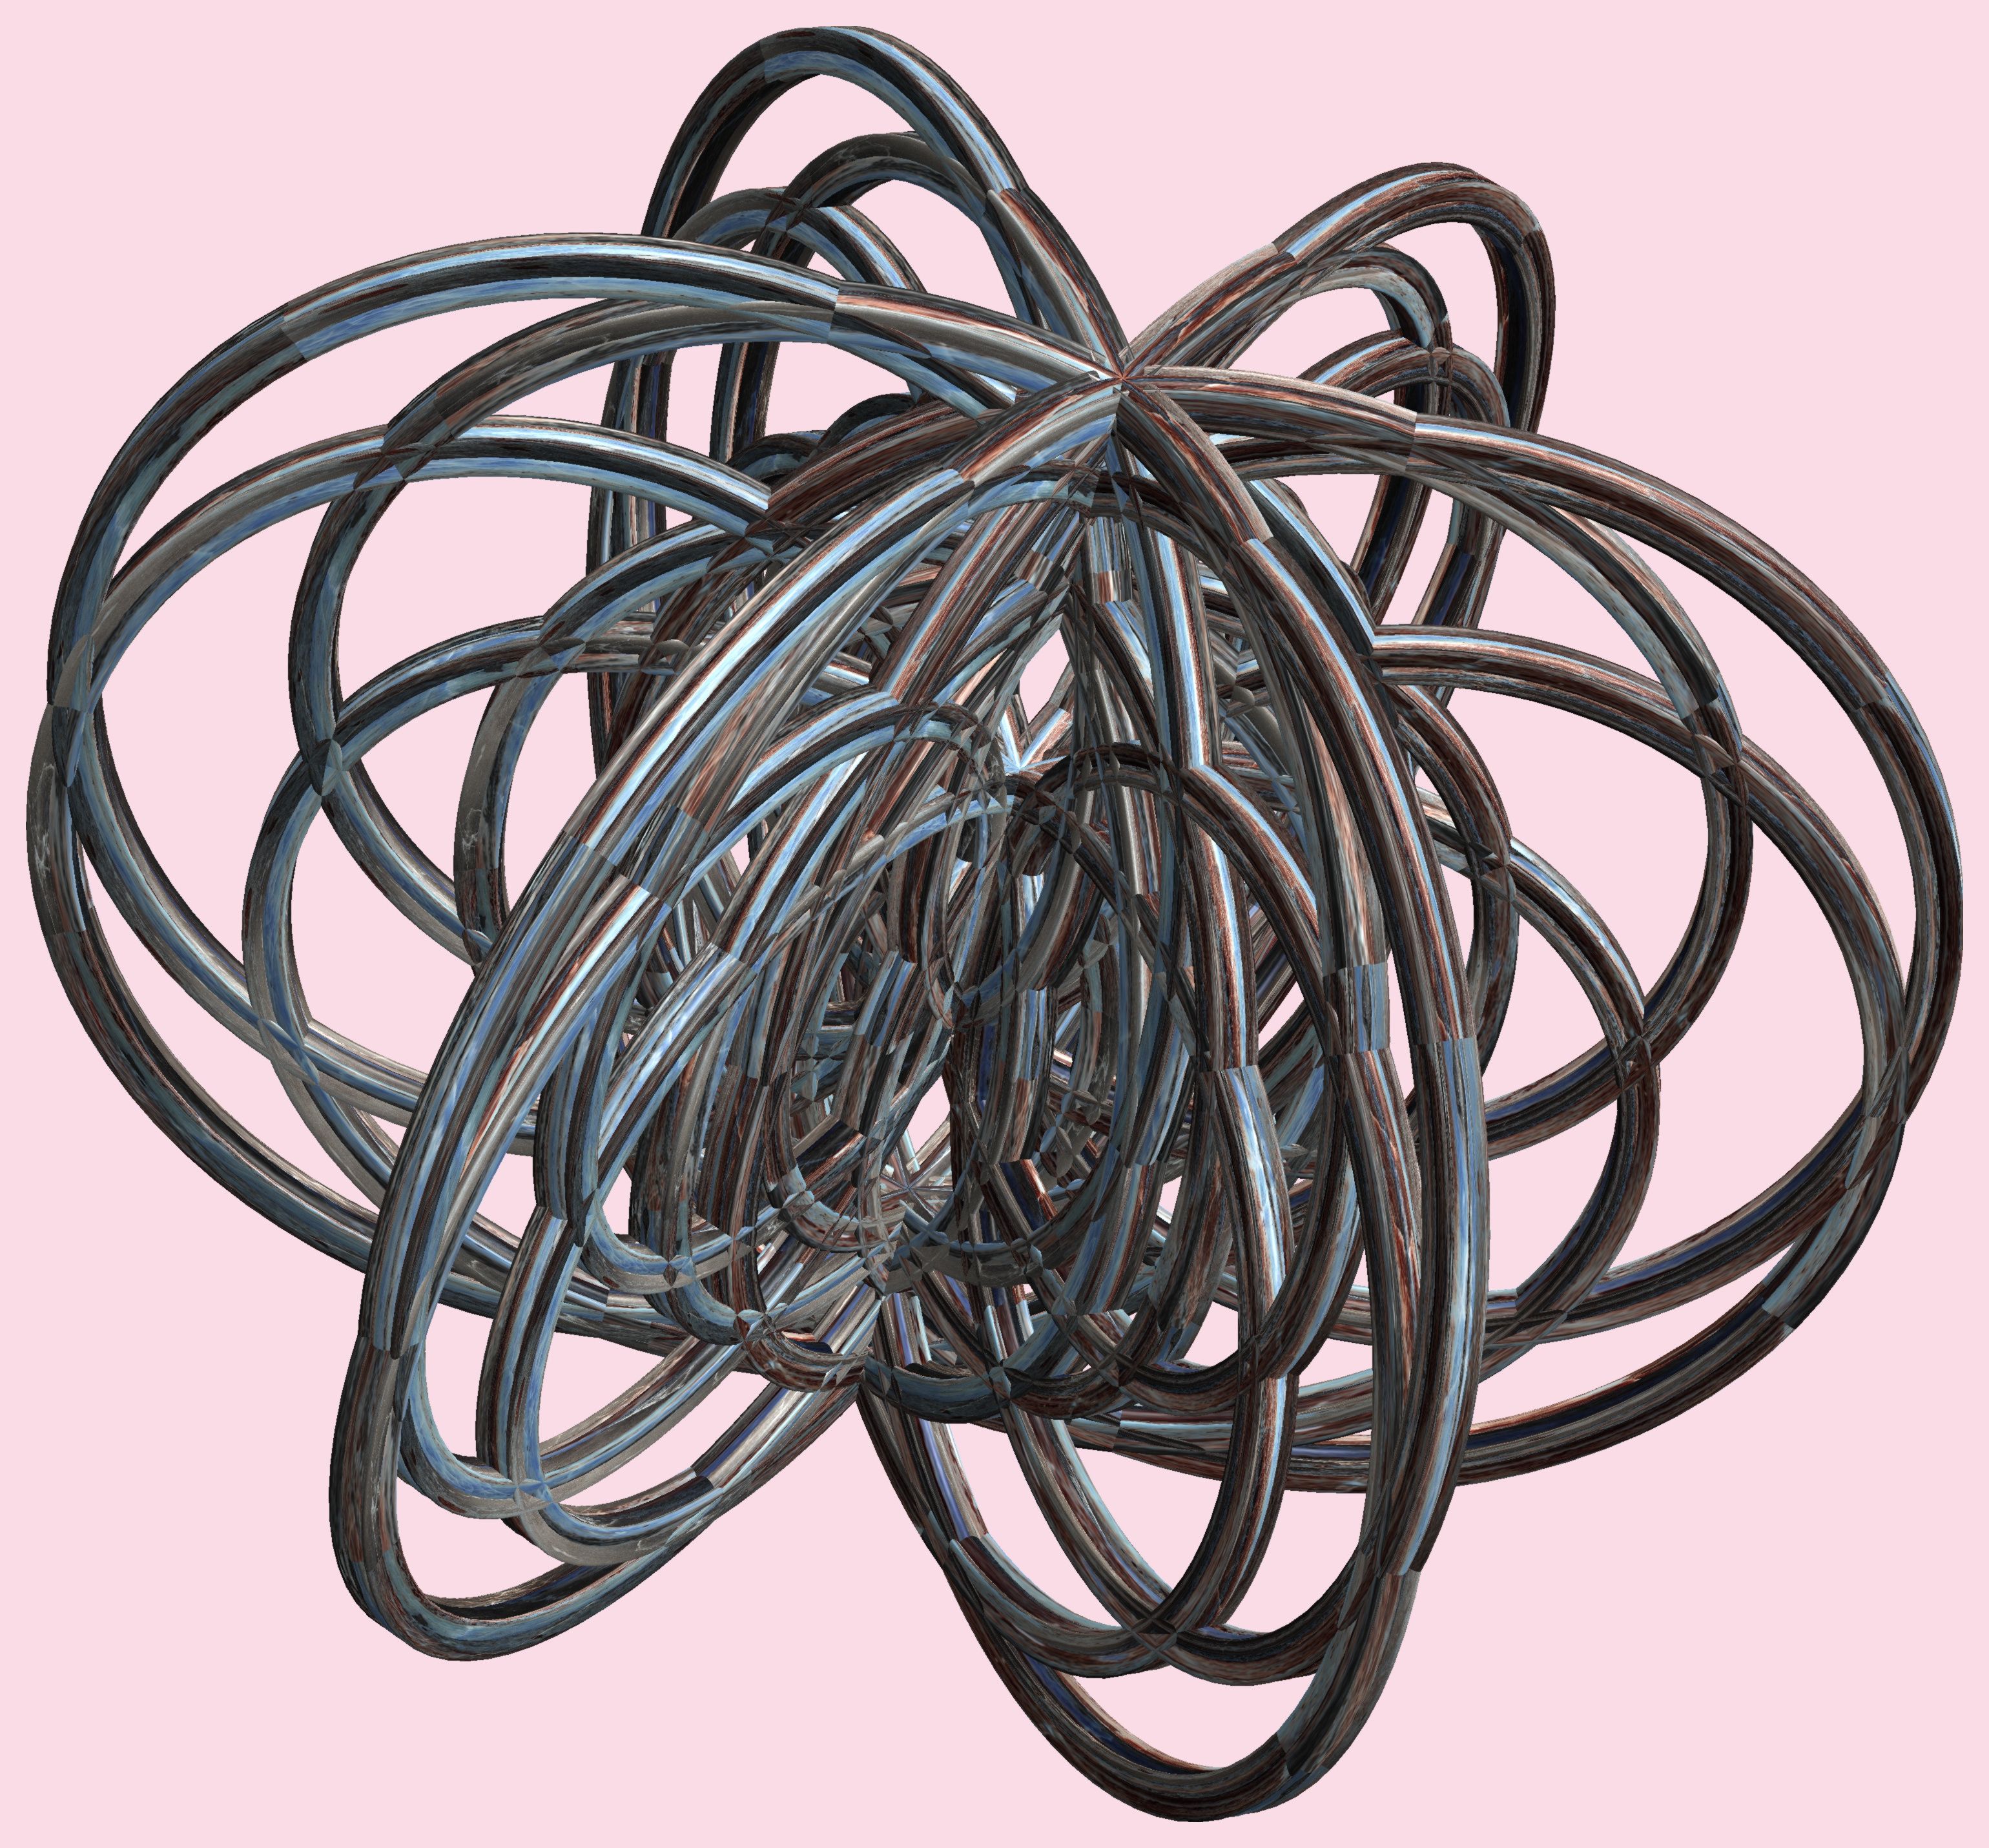 6 tori or 3d lissajous figures - mathematica / ６個の輪環(りんかん)または立体(りったい)リサージュ図形(ずけい) photo